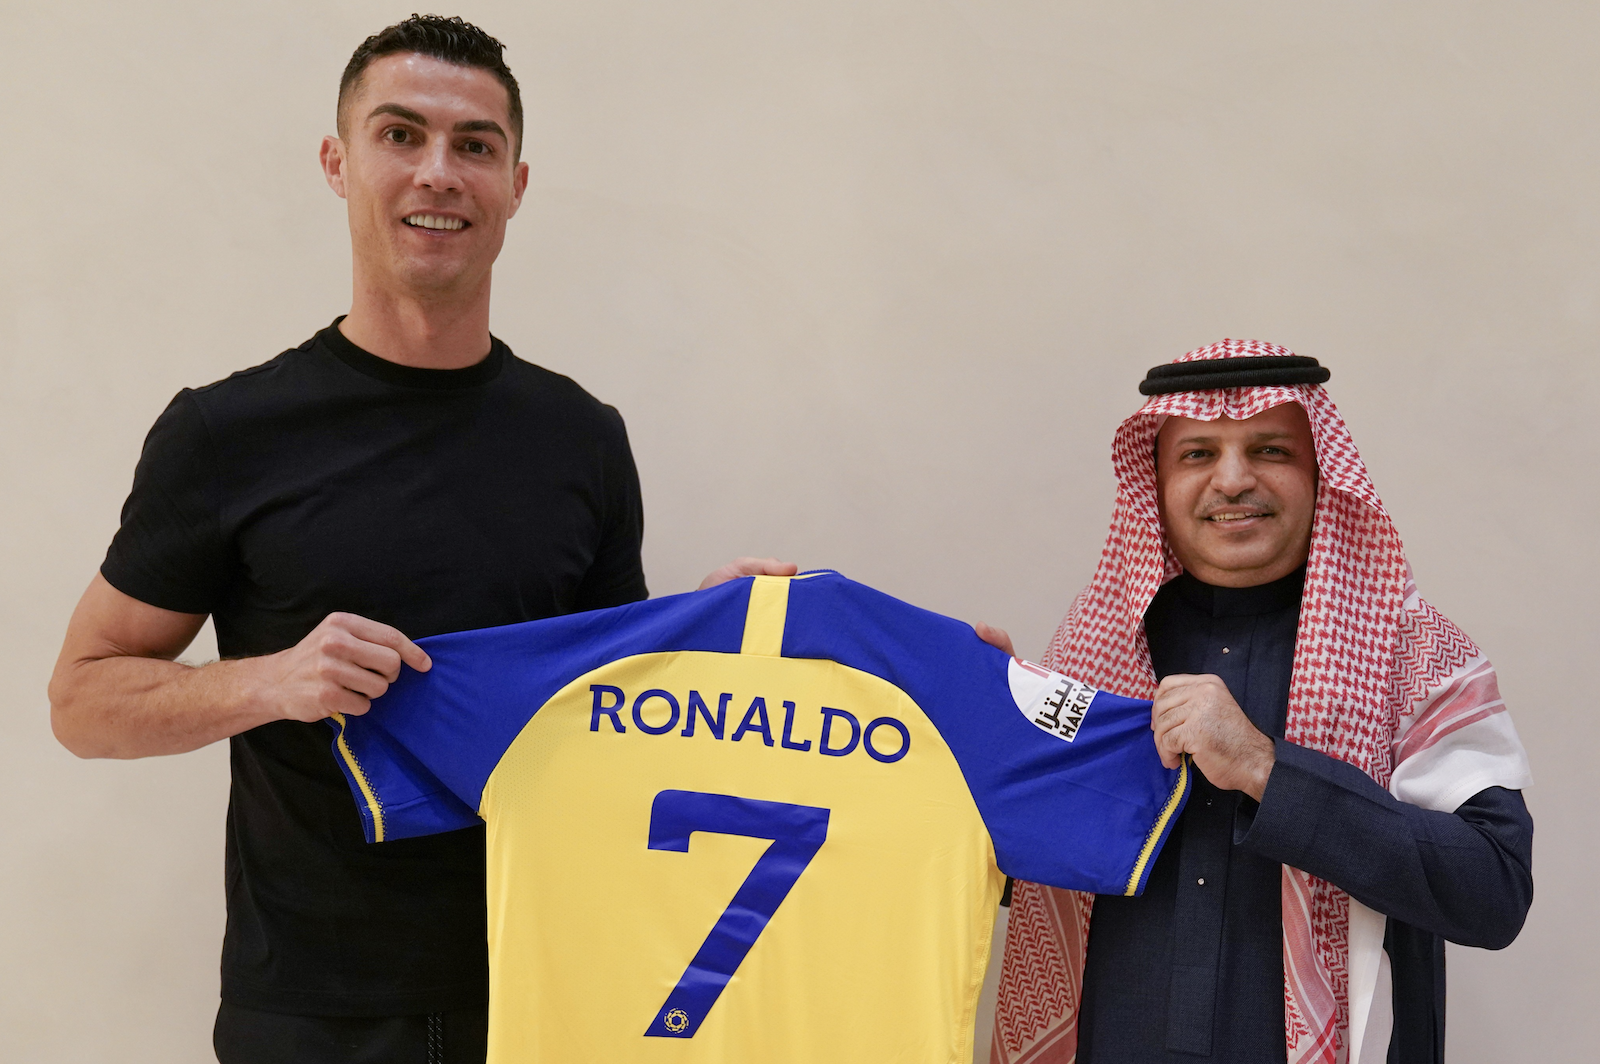 Ronaldo atterrit à Riyad pour une présentation officielle aux fans d'Al Nassr demain